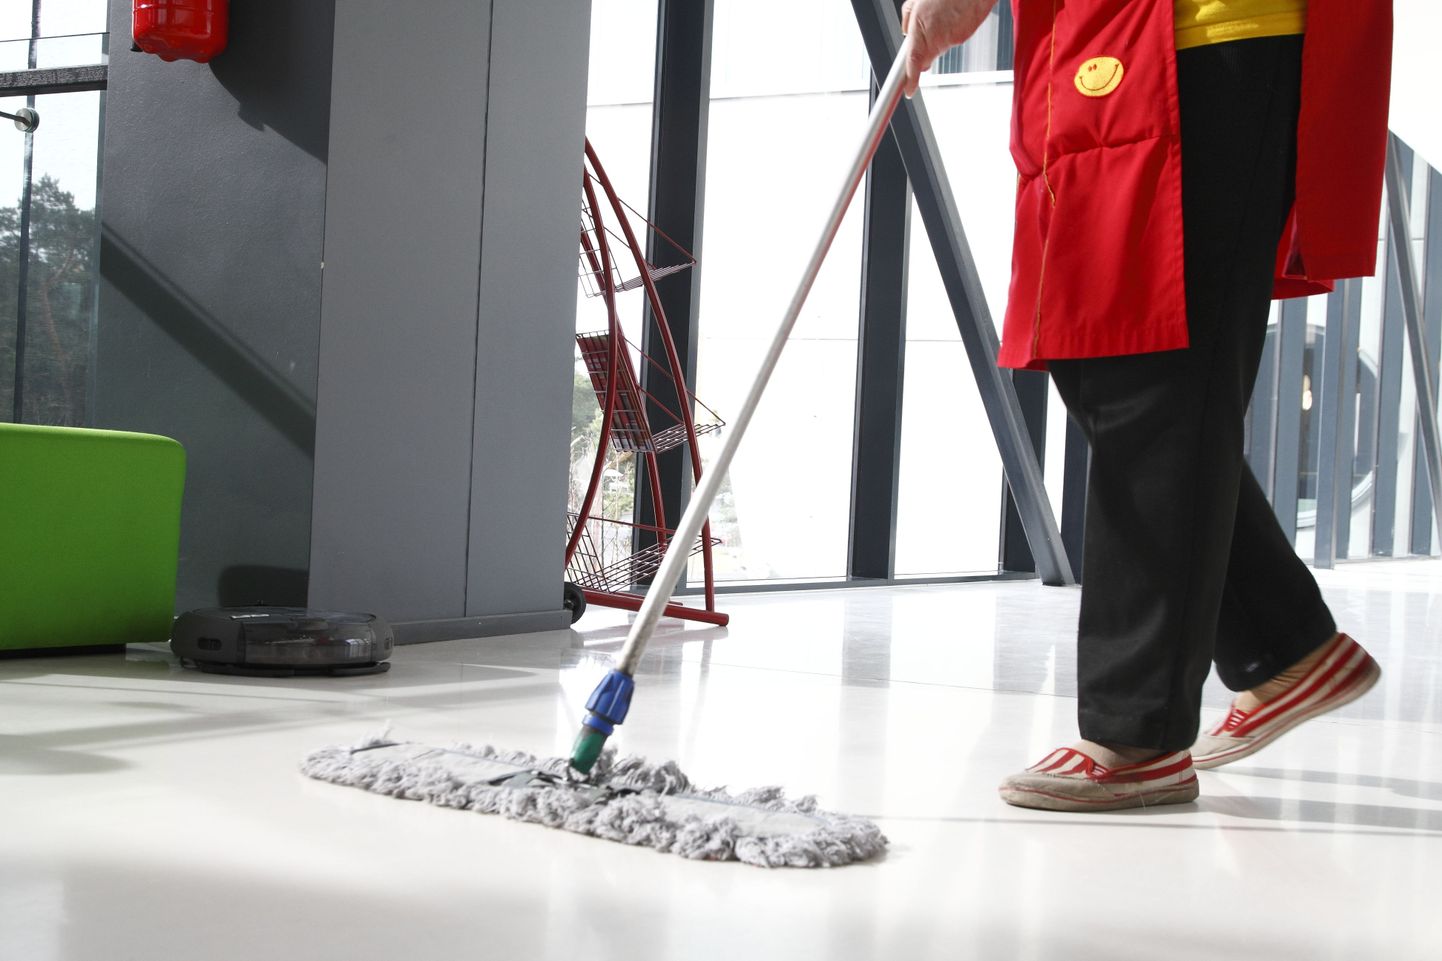 Tasub mõelda, kas on ikka vaja iga päev kontorit lasta koristada või oleks otstarbekam teha seda harvem.